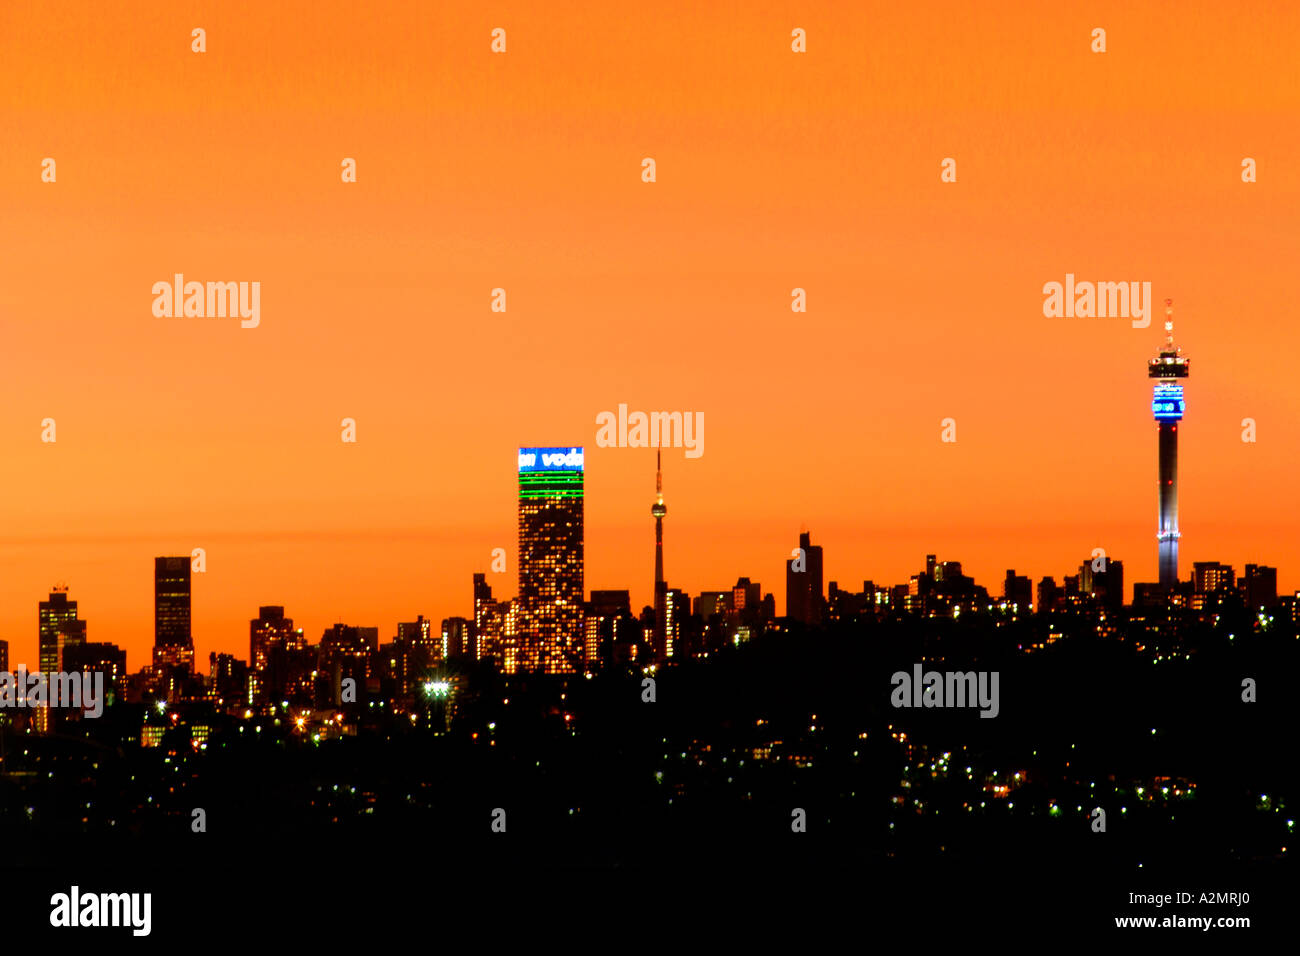 L'horizon de Johannesburg au crépuscule montrant la JG Strydom/Hilbrow tower (à droite) et la Tour de Brixton (centre). Banque D'Images